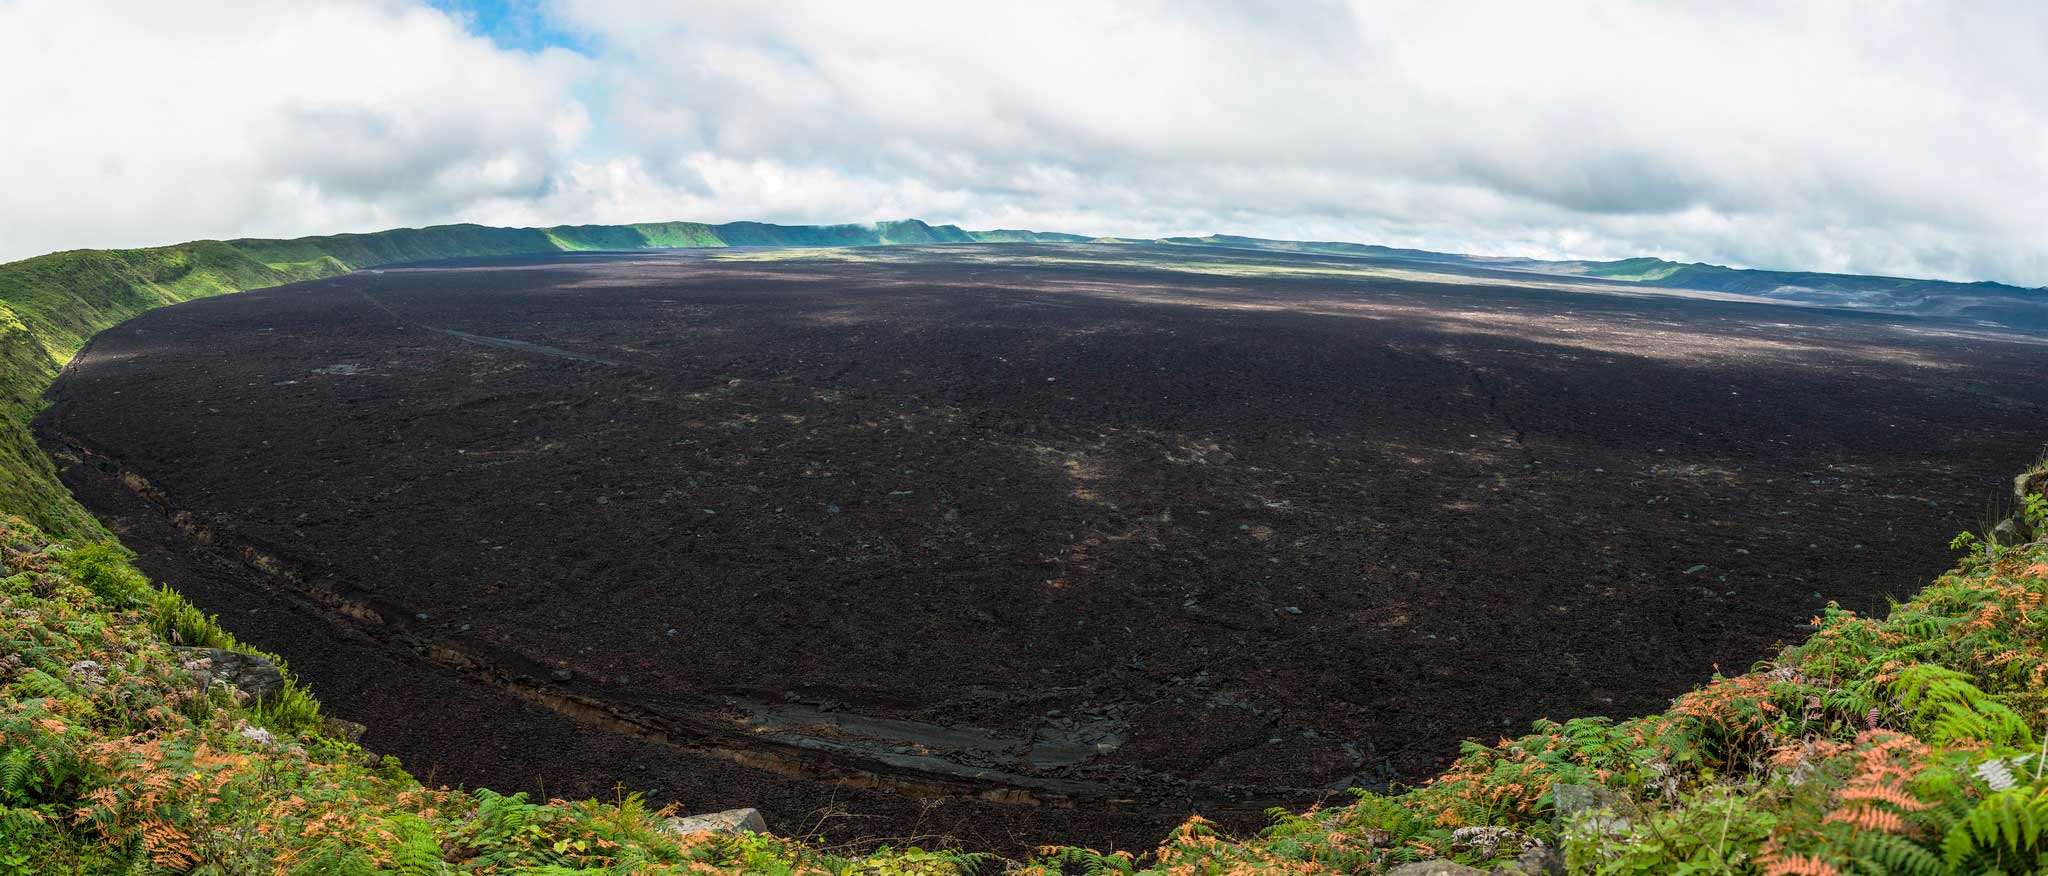 Advierten de alta actividad sísmica en un volcán de las Islas Galápagos